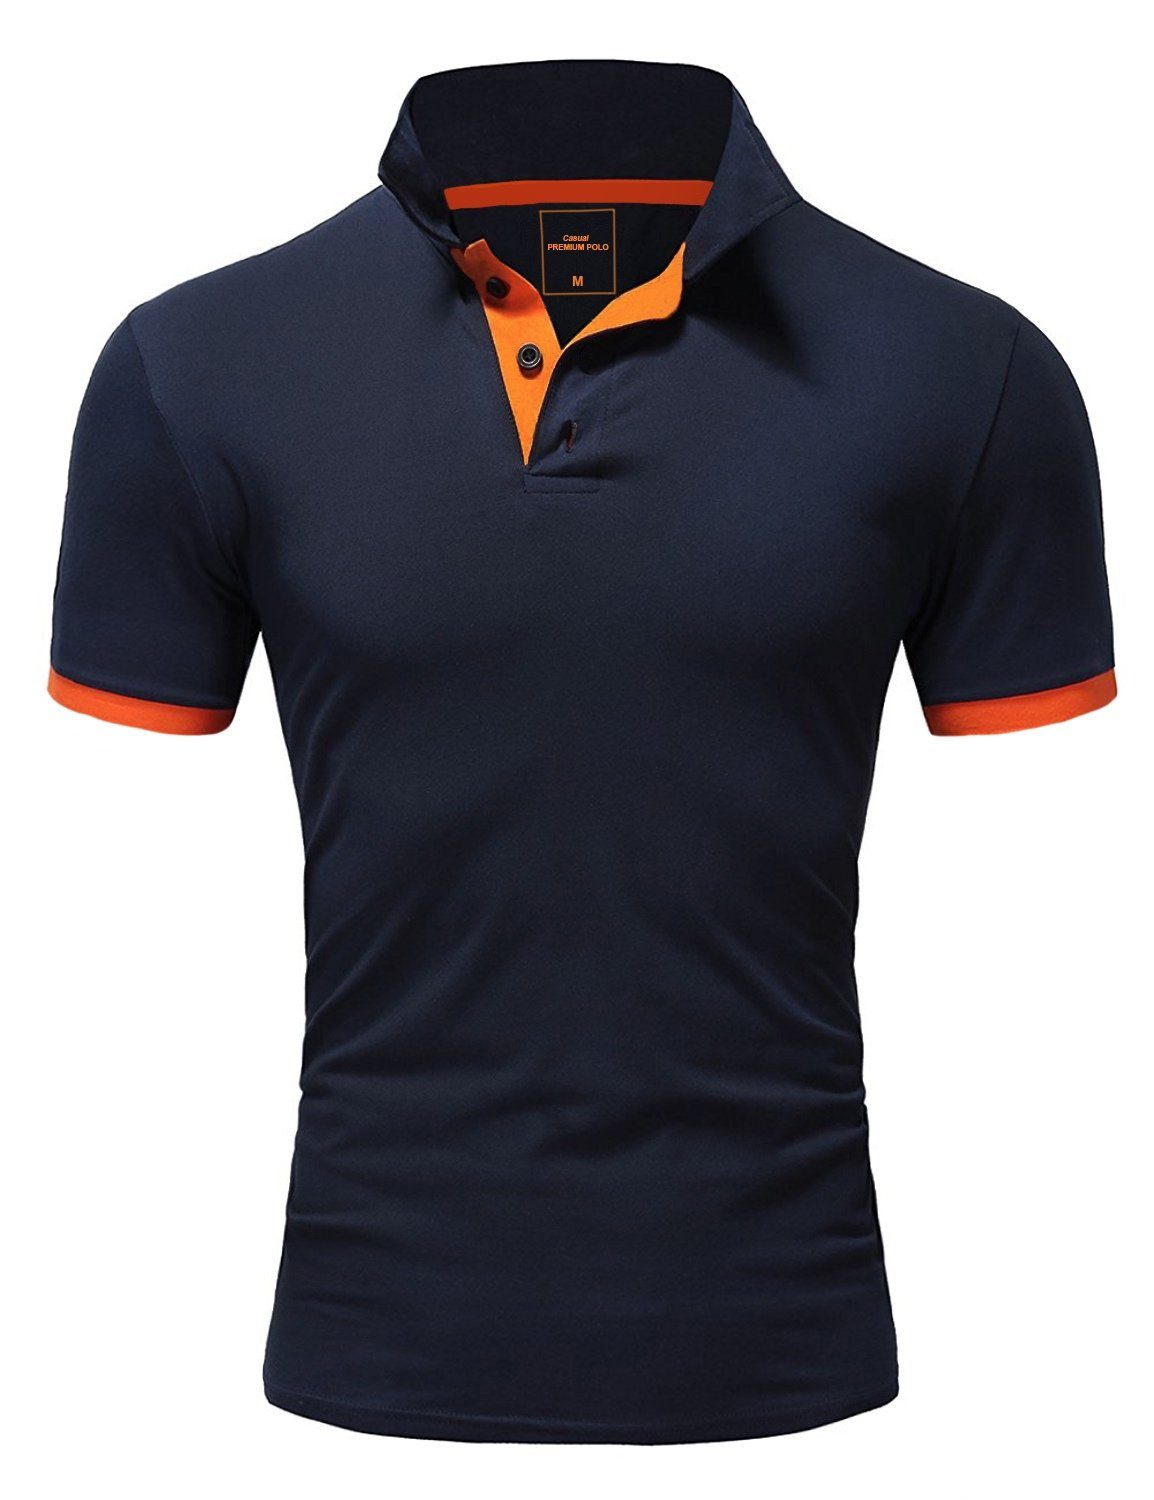 Amaci&Sons Poloshirt DETROIT Basic Kontrast Poloshirt Navyblau/Orange